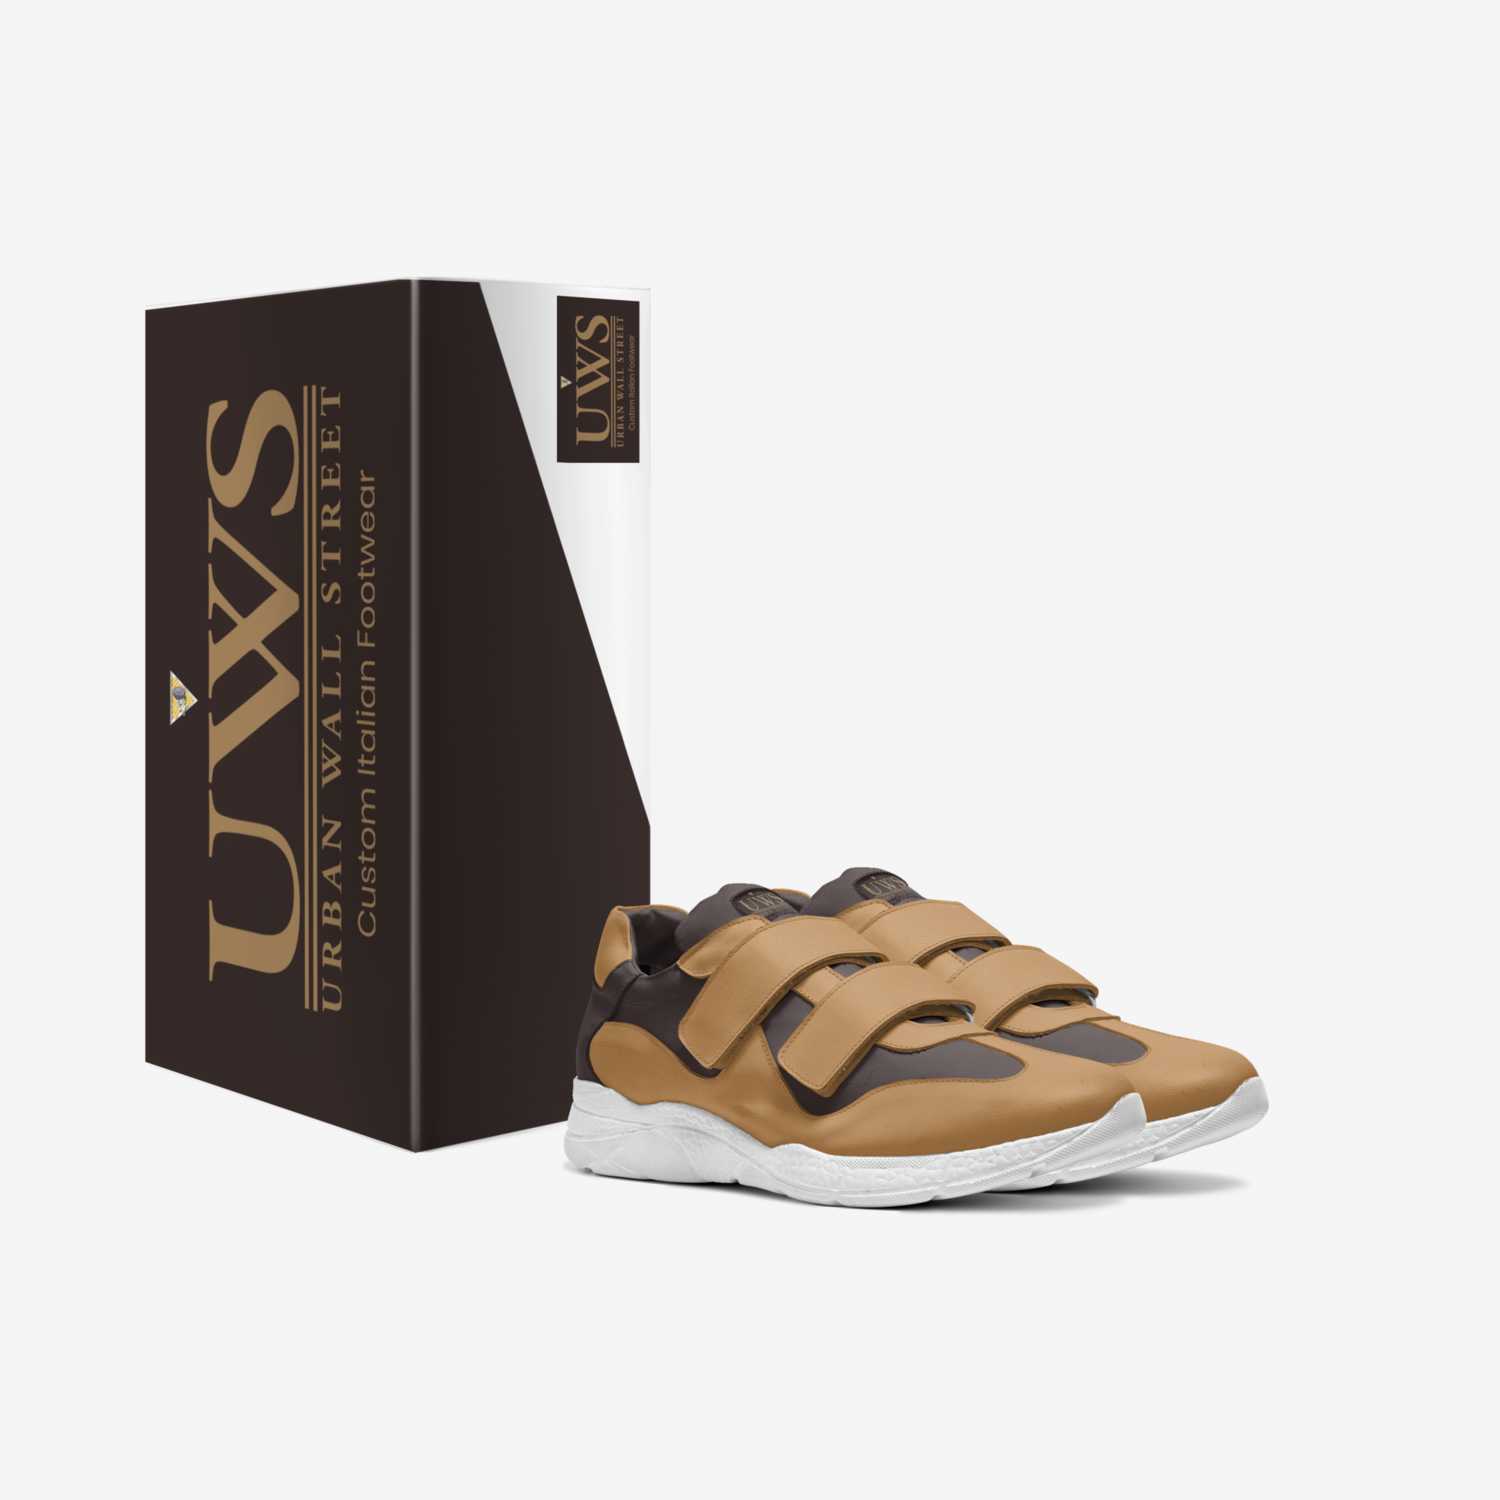 Batistas  custom made in Italy shoes by Urbanwallstreet Earl | Box view